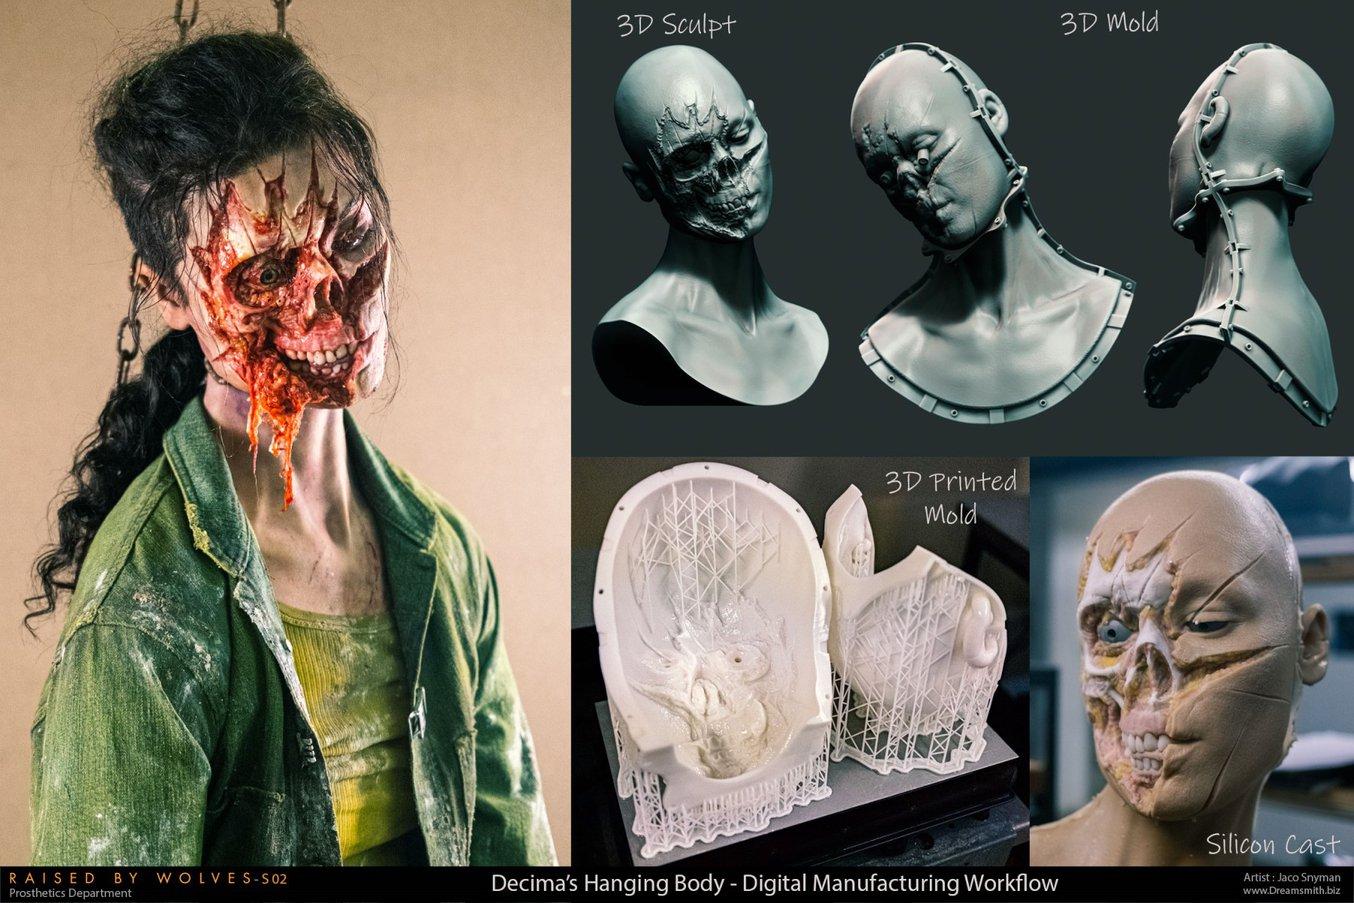 デジタルでデザインしRigid 10Kレジンを使って3Dプリントした型で、女優の顔にそっくりのシリコン製レプリカを製造。